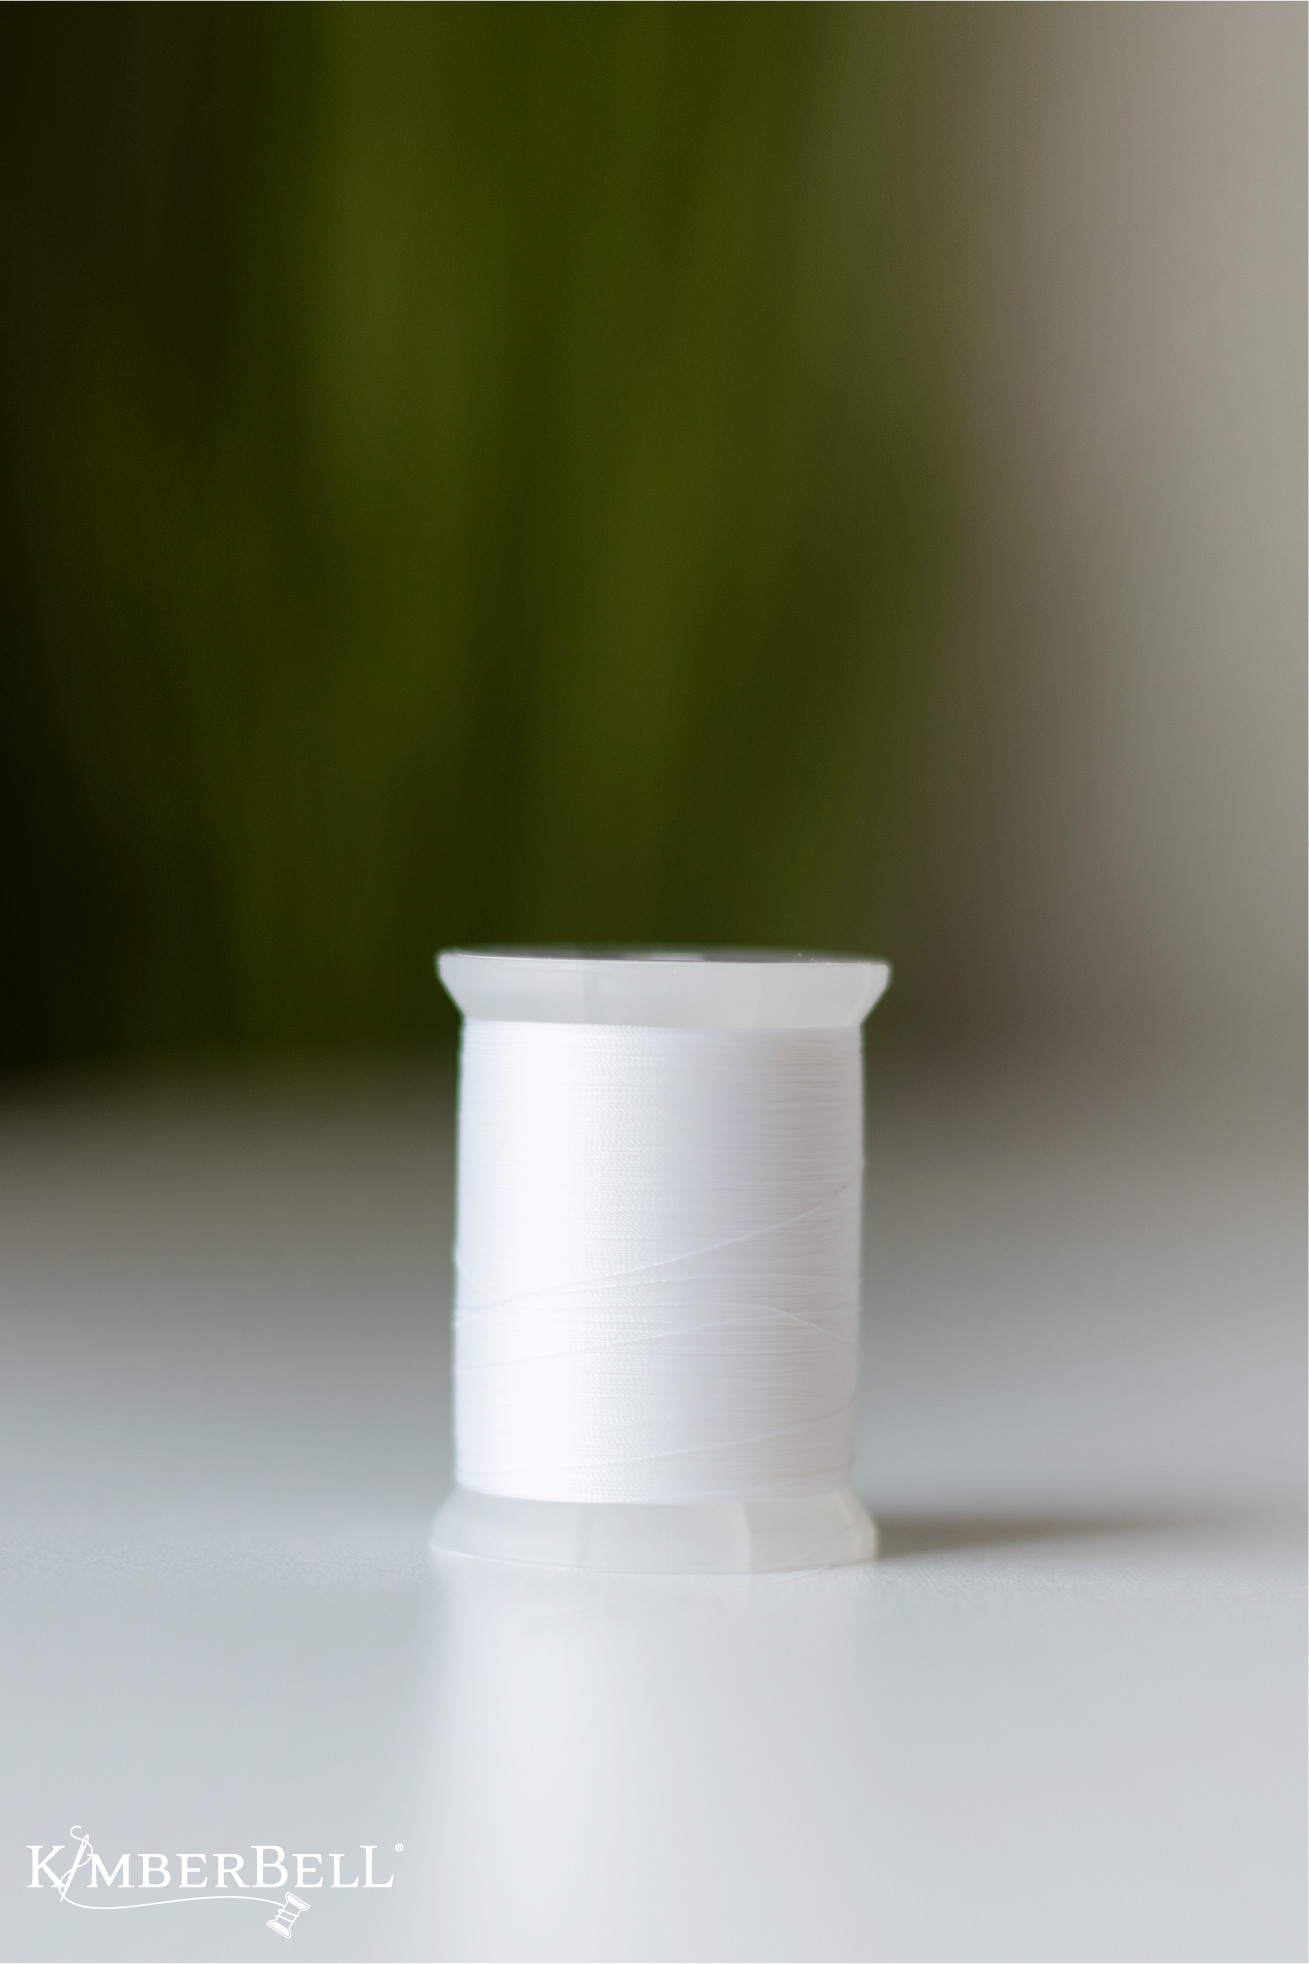 Filament White Cotton embroidery bobbin thread, For Textile